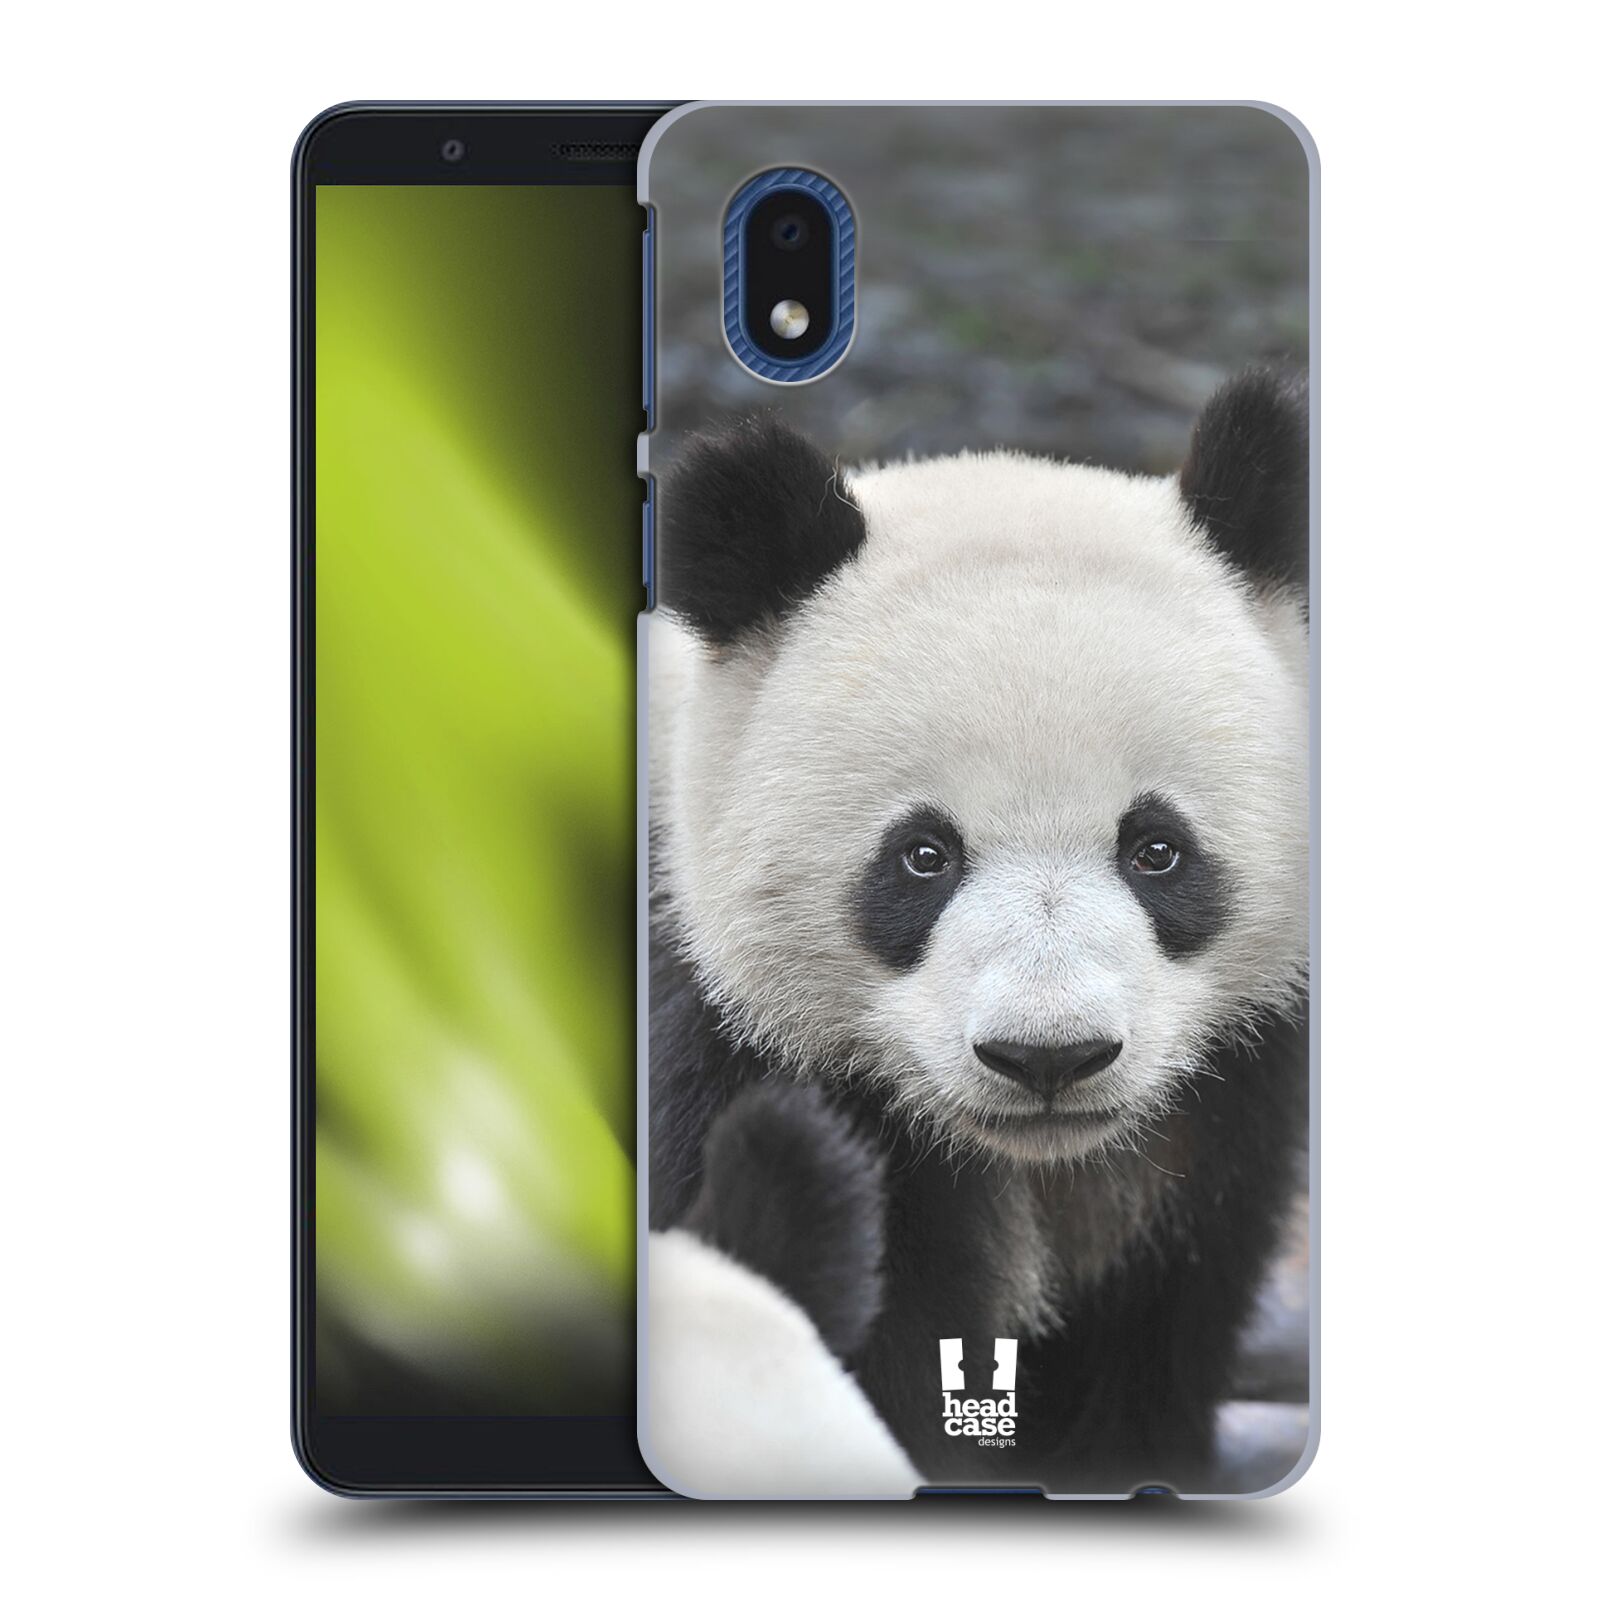 Zadní obal pro mobil Samsung Galaxy A01 CORE - HEAD CASE - Svět zvířat medvěd panda